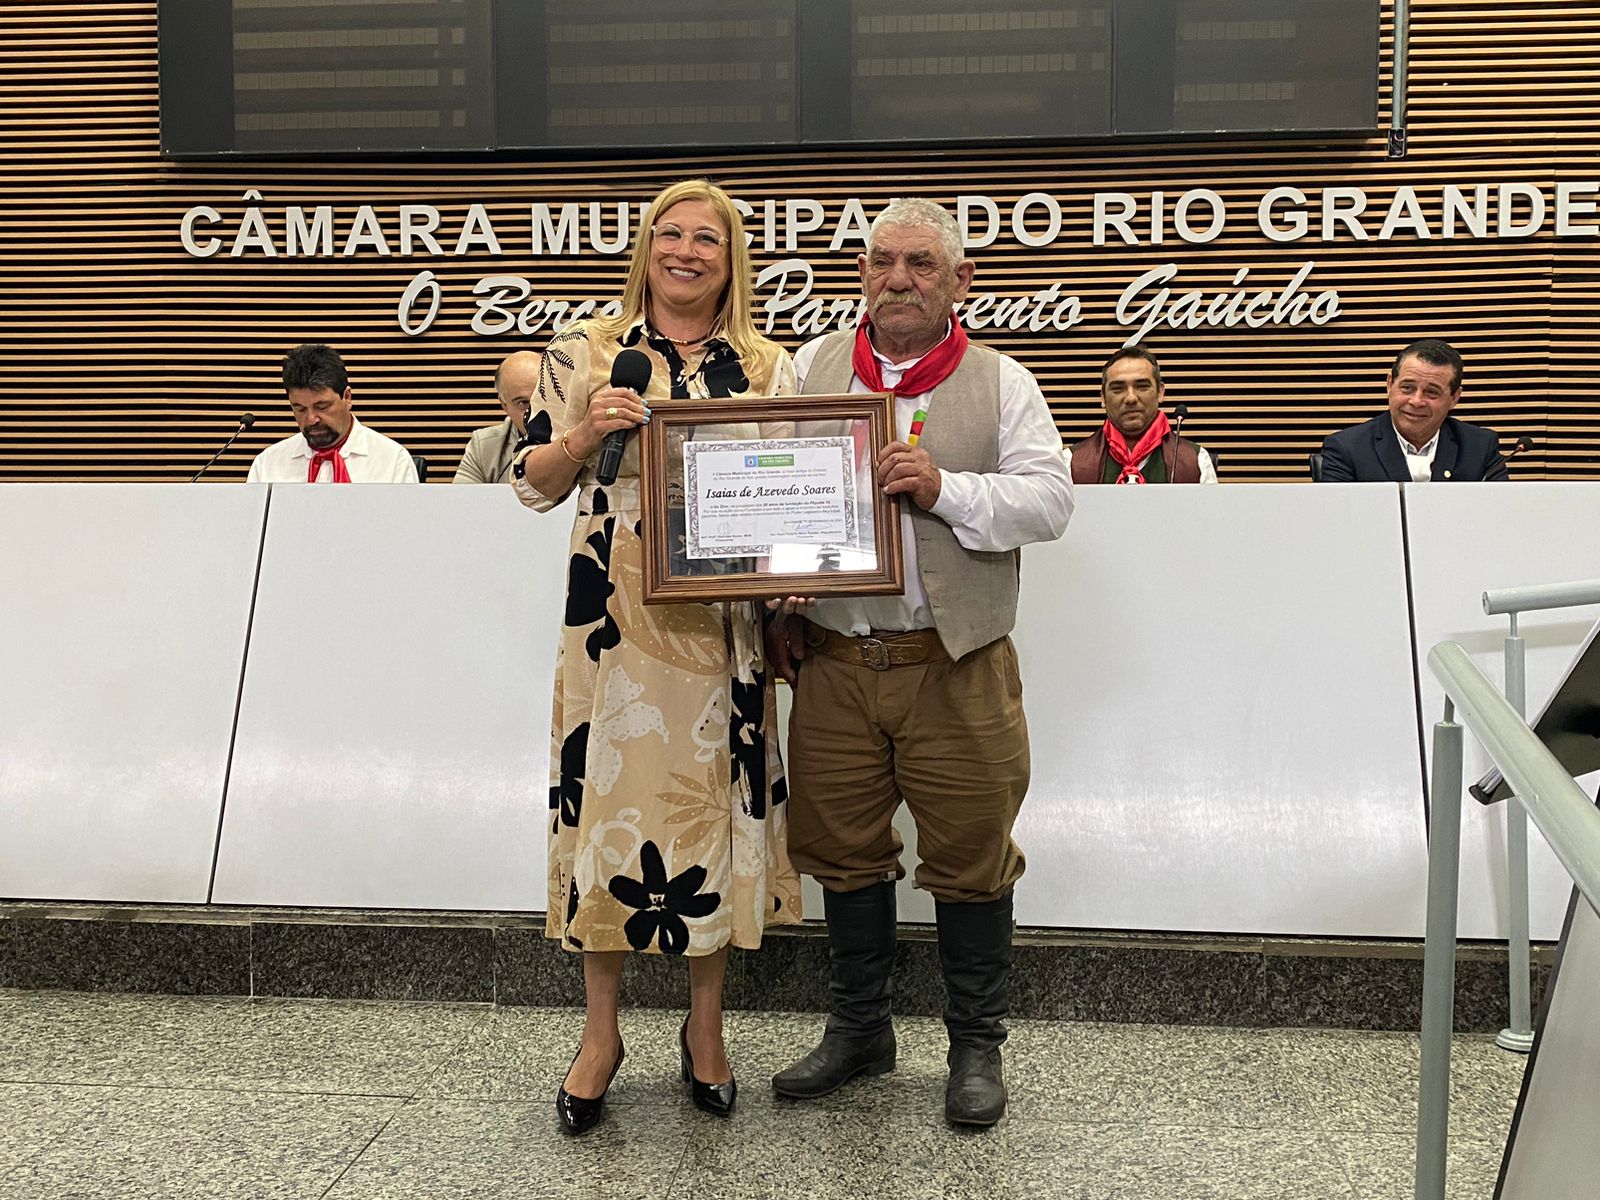 Piquete 35 recebe homenagem da Câmara Municipal do Rio Grande